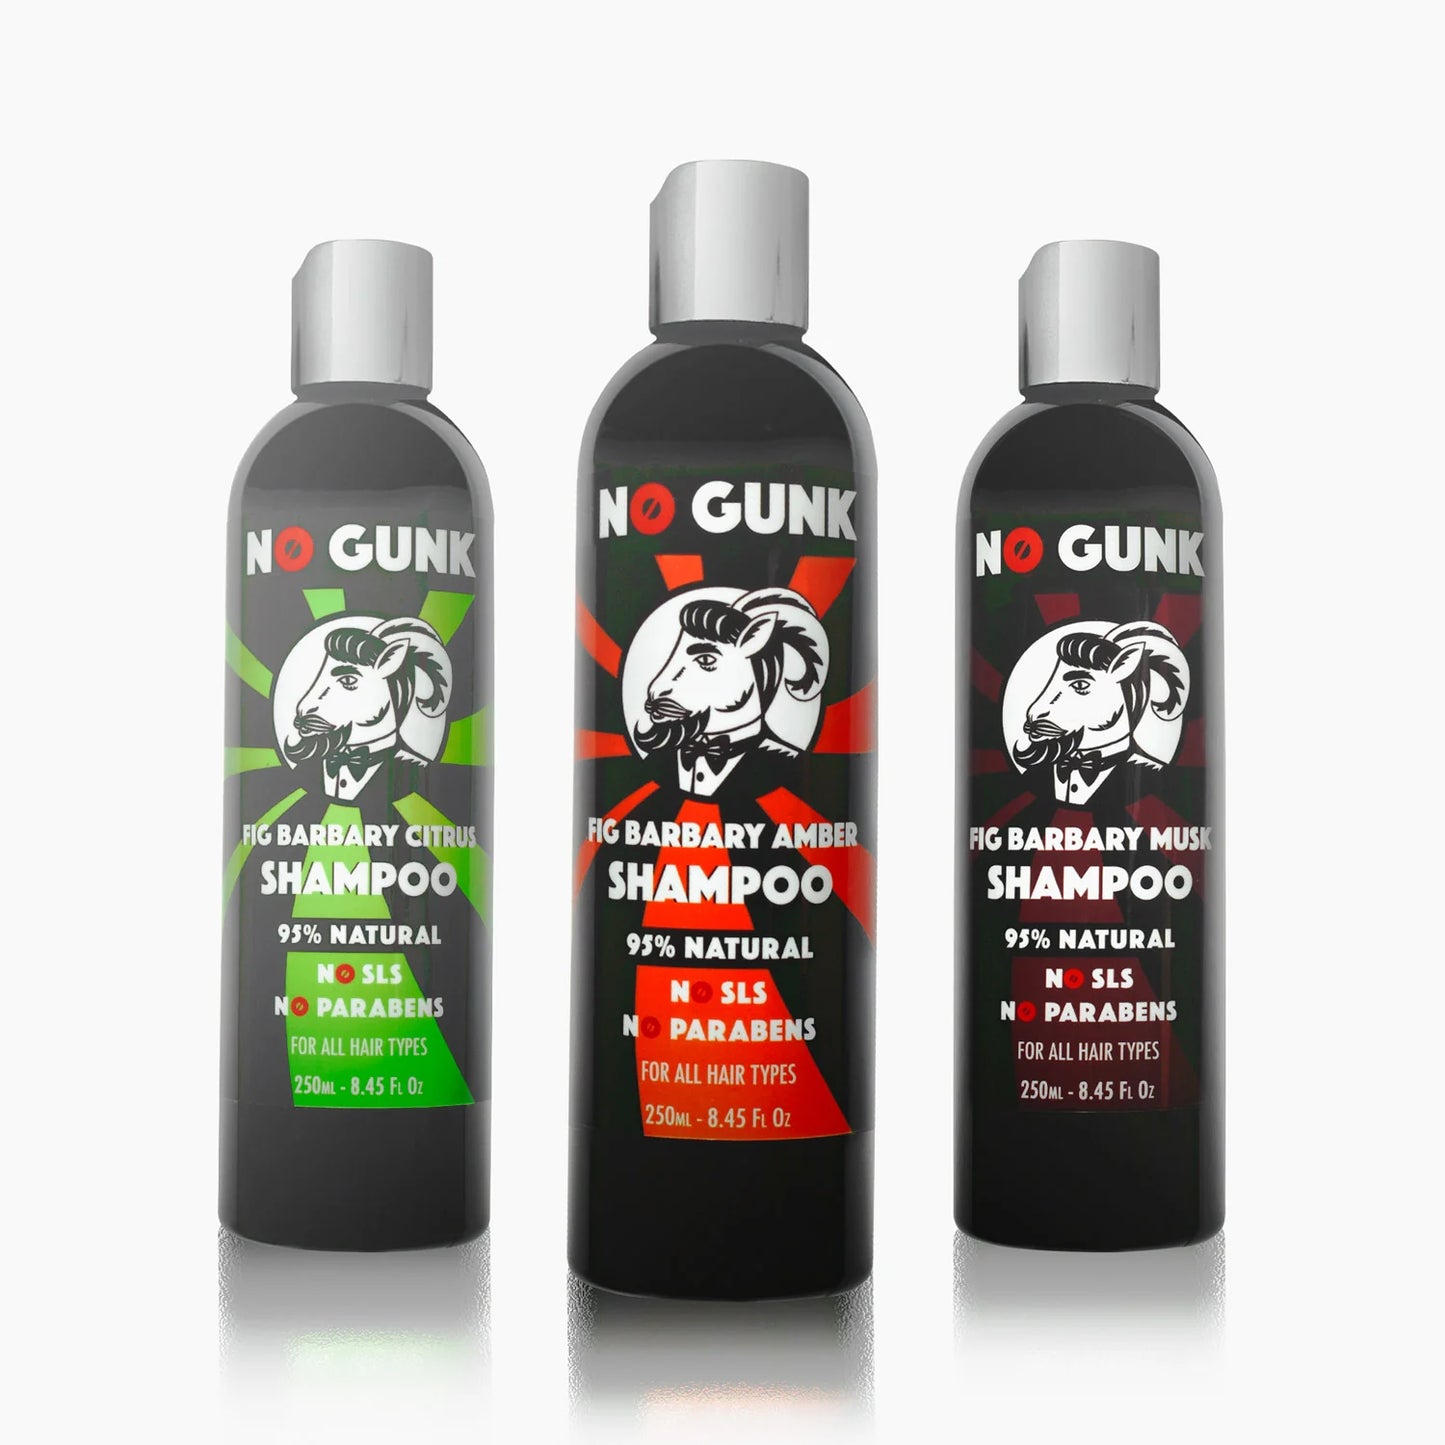 NO GUNK shampoo